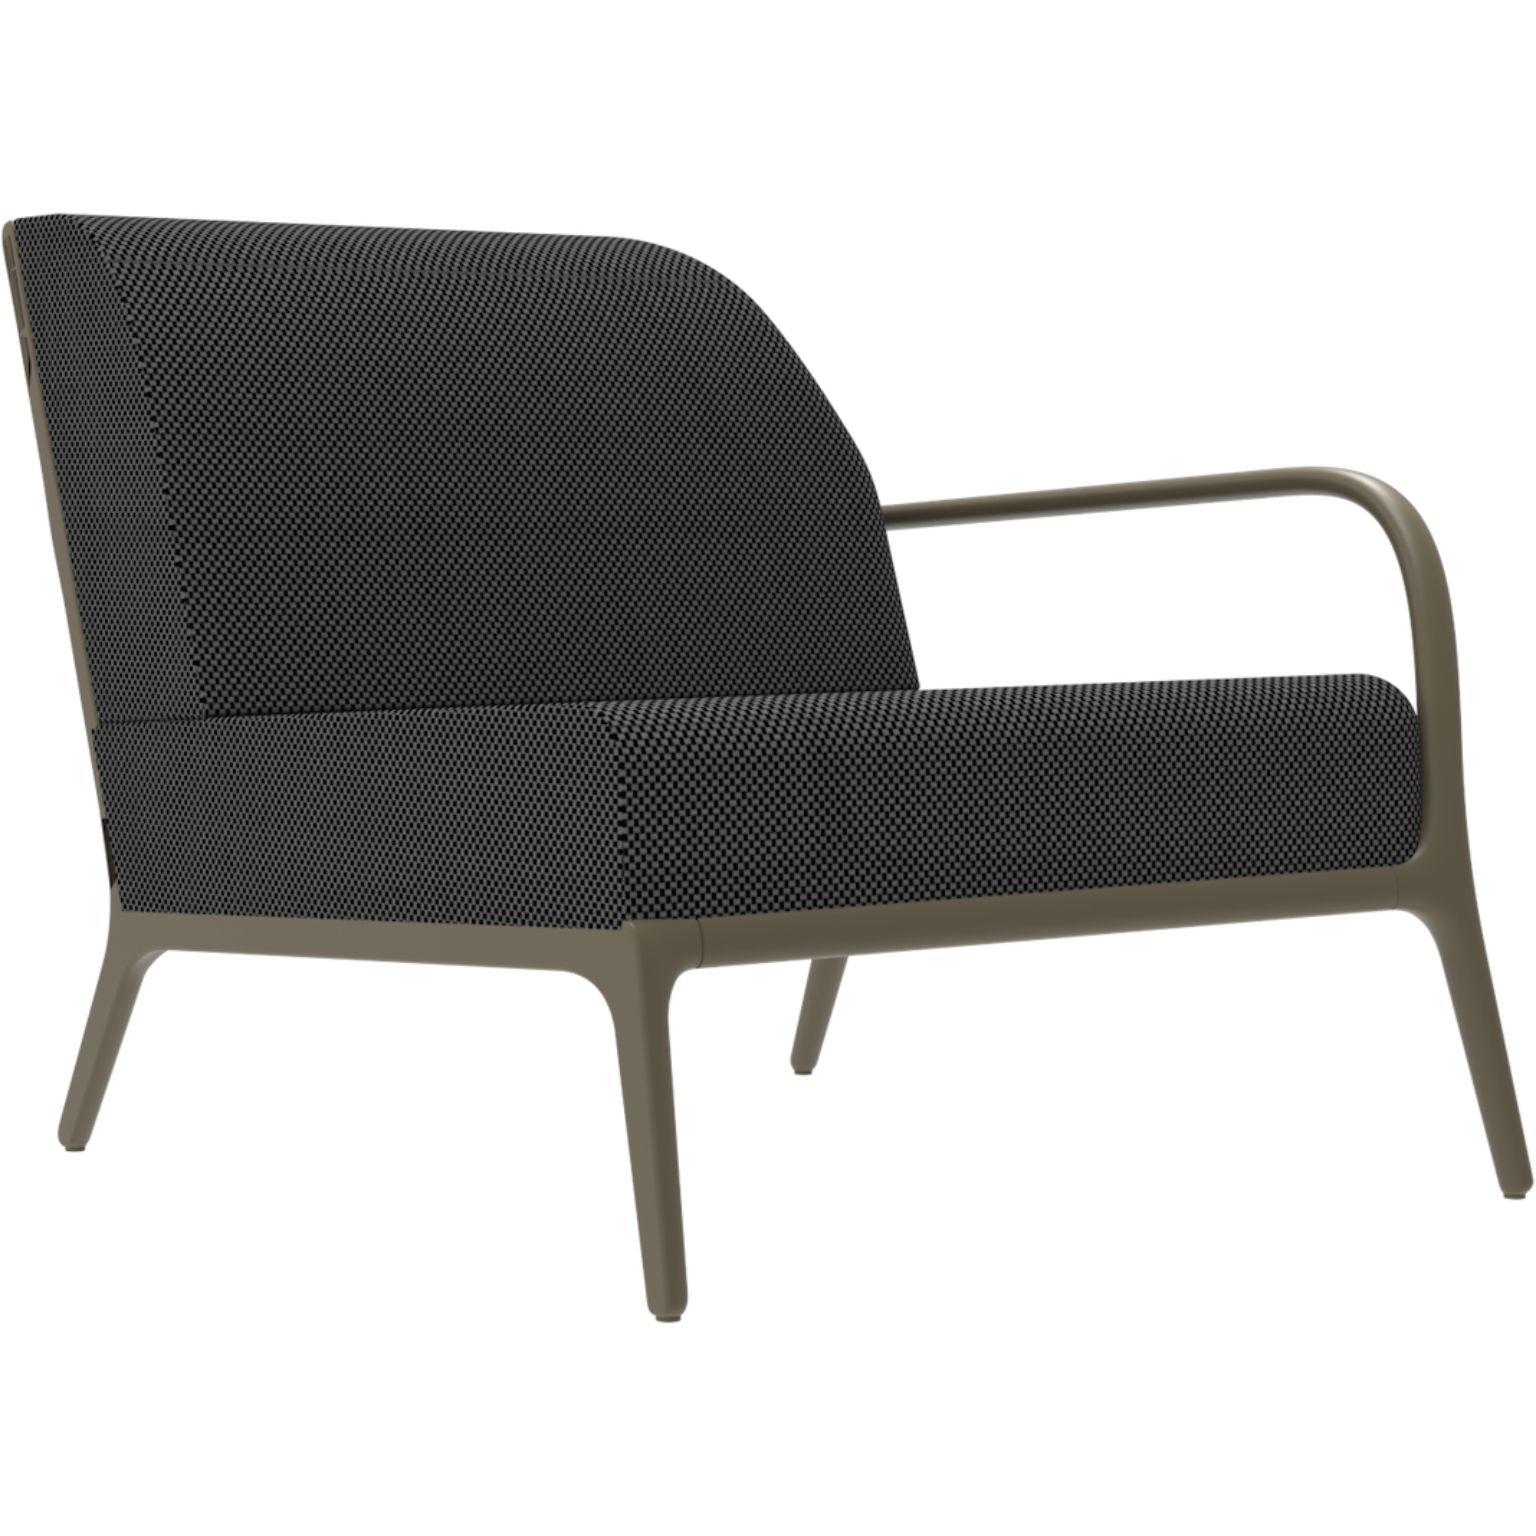 Xaloc Left 90 Bronze Modulares Sofa von MOWEE
Abmessungen: T100 x B90 x H81 cm (Sitzhöhe 42 cm)
MATERIAL: Aluminium, Textil
Gewicht: 25 kg
Auch in verschiedenen Farben und Ausführungen erhältlich. 

 Xaloc synthetisiert die Linien der